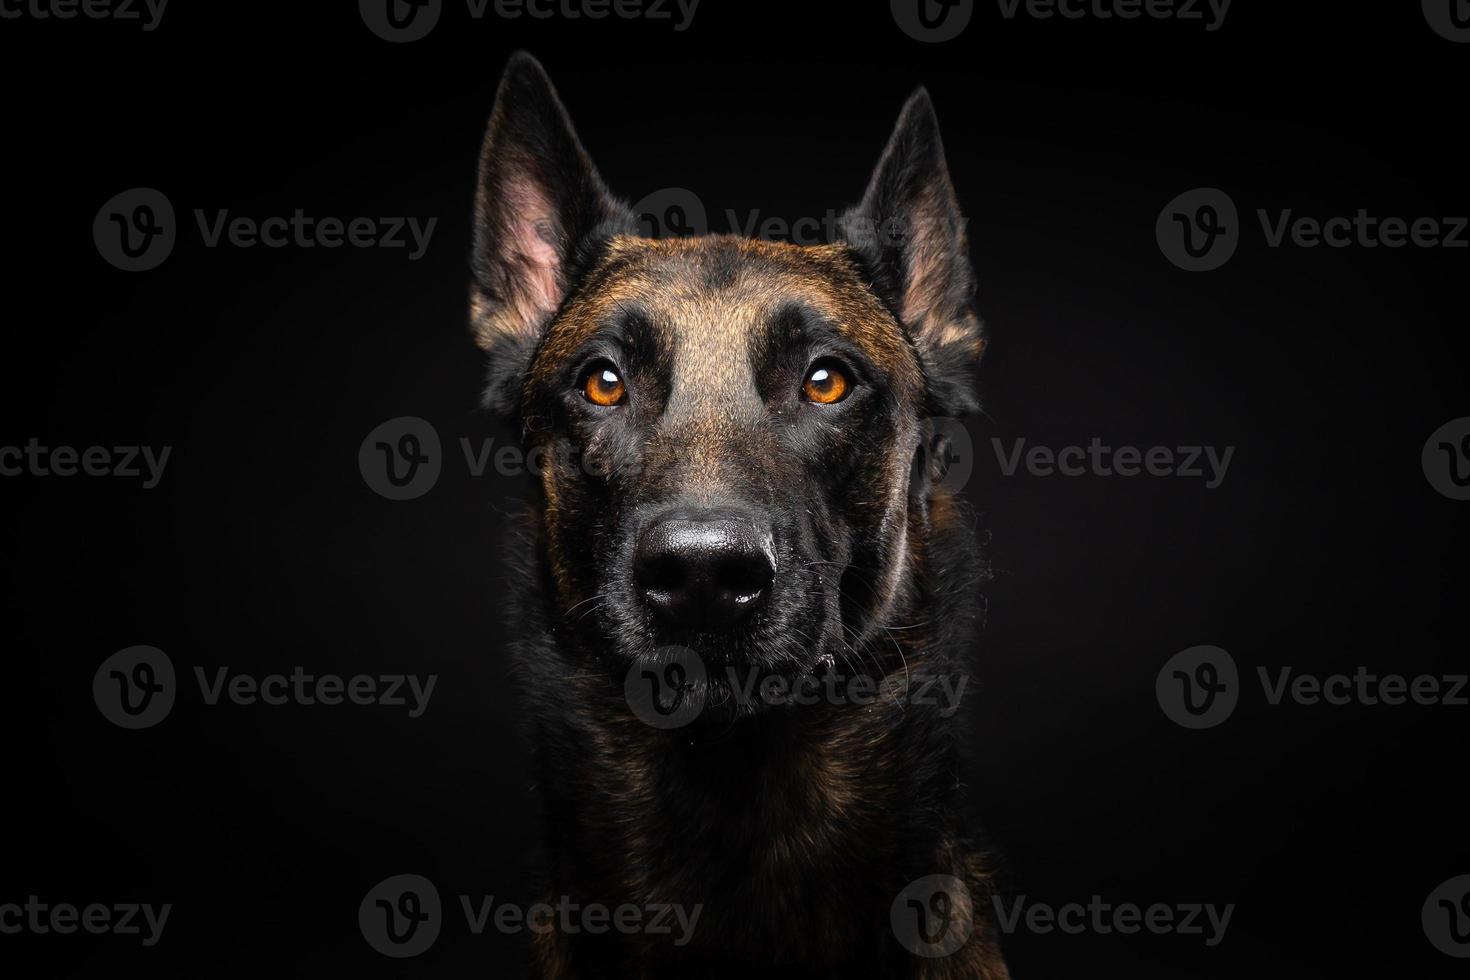 portret van een belgische herdershond op een afgelegen zwarte achtergrond. foto